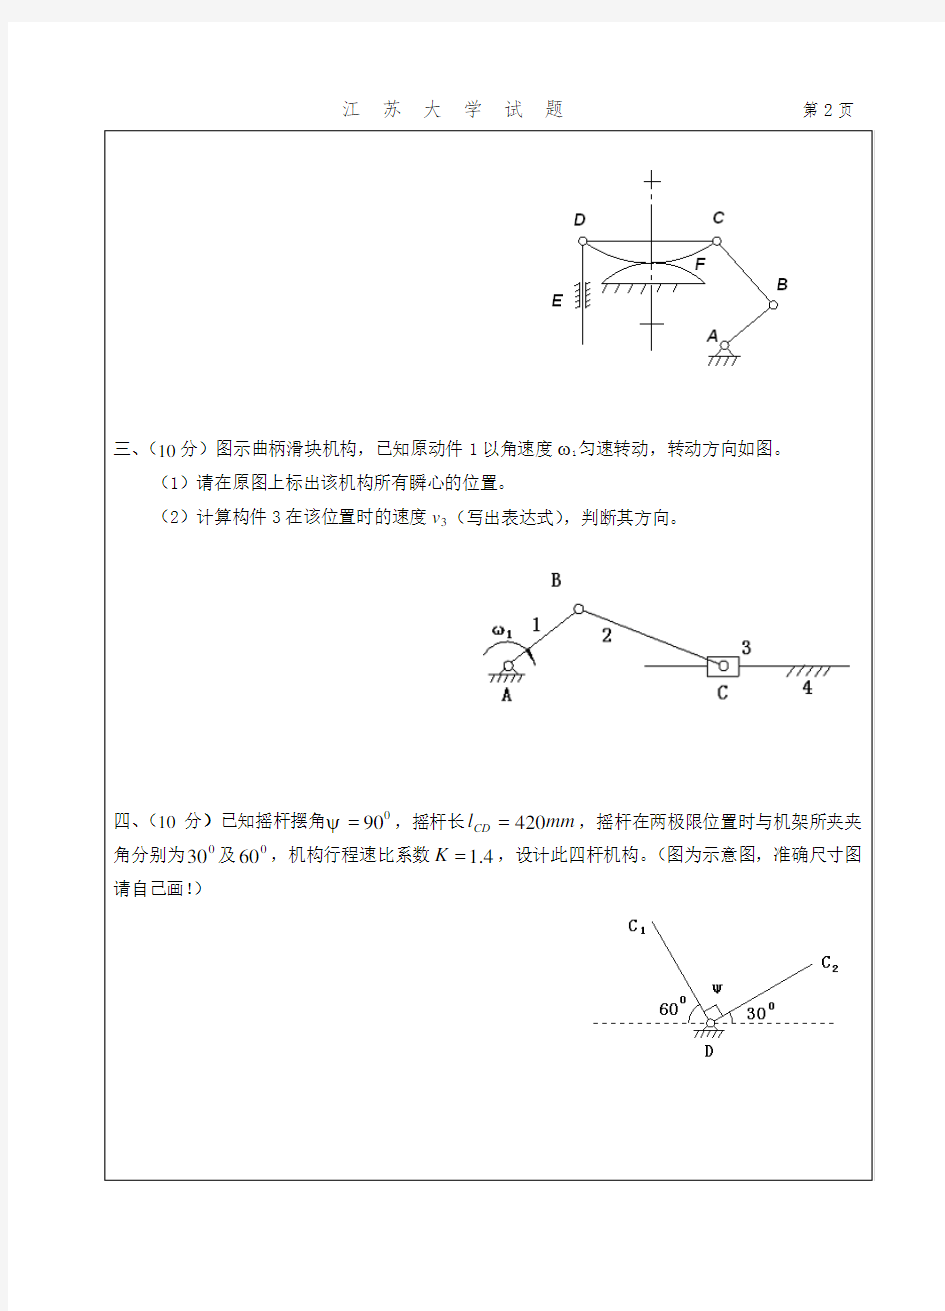 机械设计原理试卷2008_江苏大学